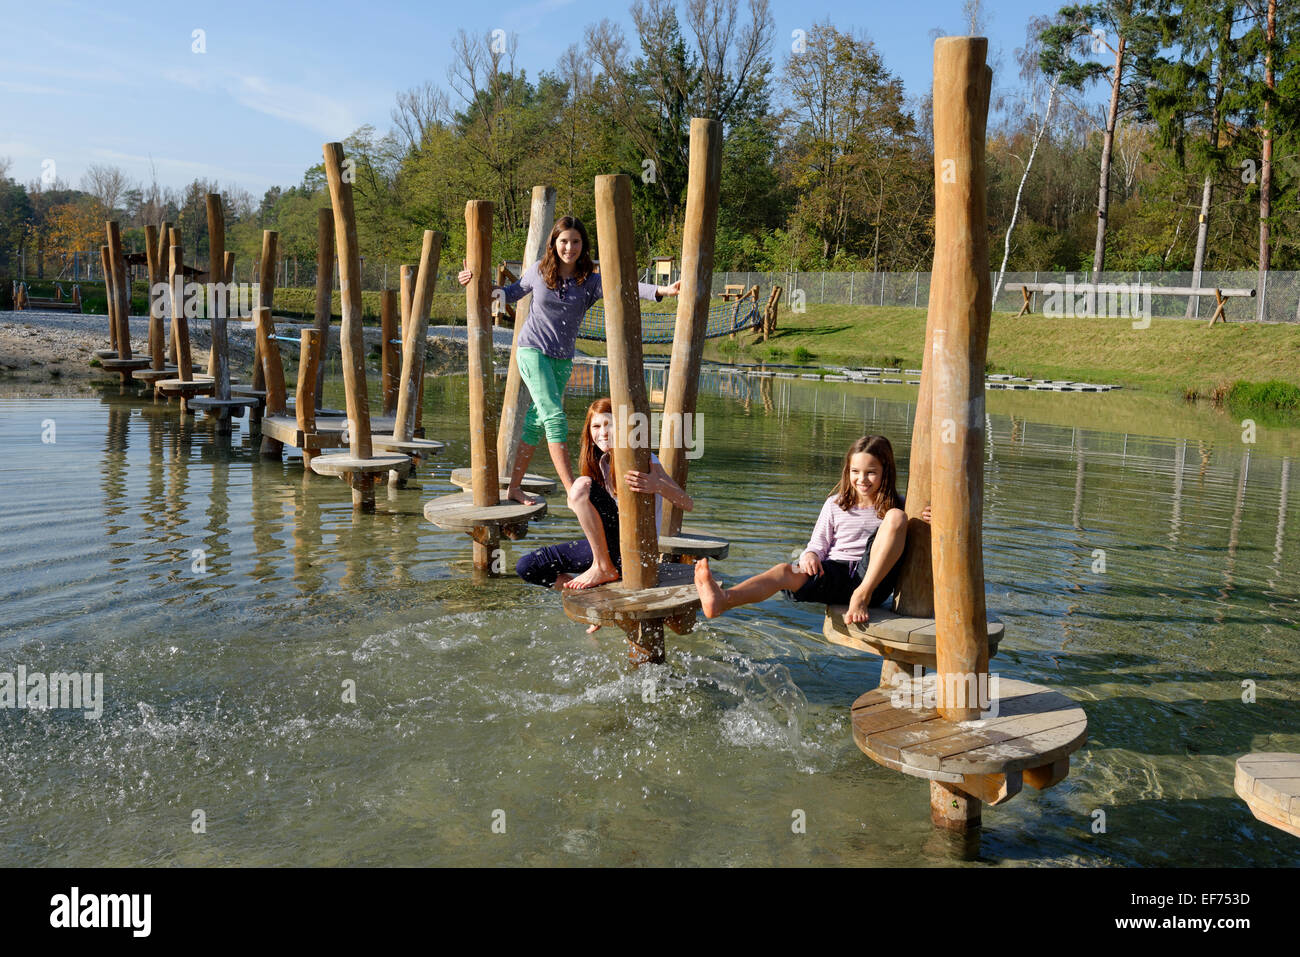 Children playing at the Erlebnispark Wasser Fisch Natur adventure park, at Murner See lake, near Wackersdorf Stock Photo